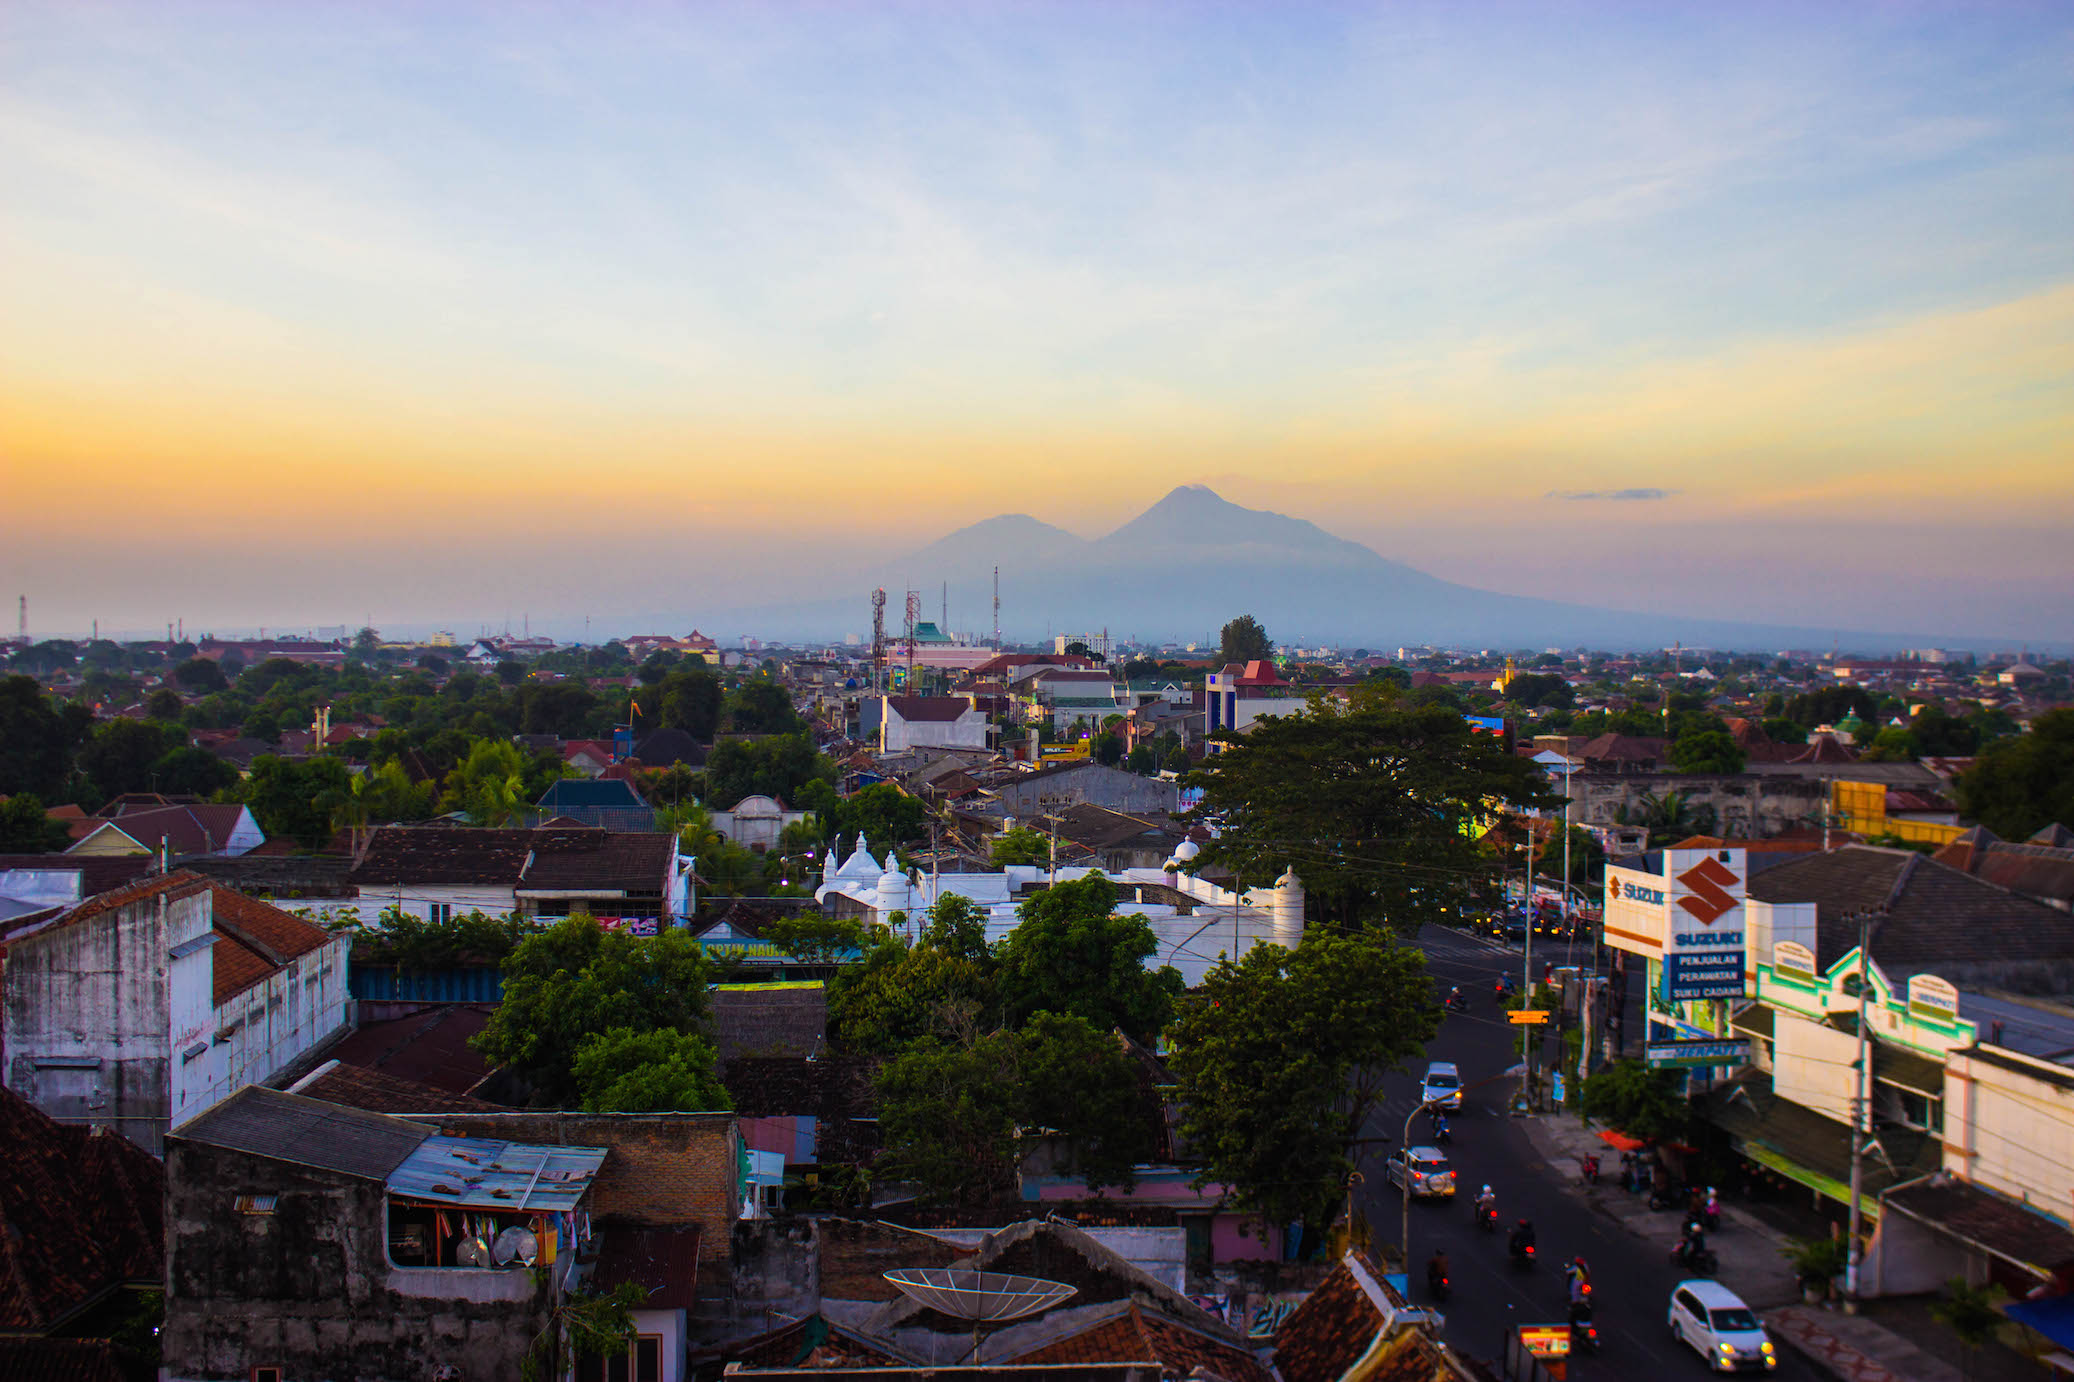 Sunset in Yogyakarta, Indonesia